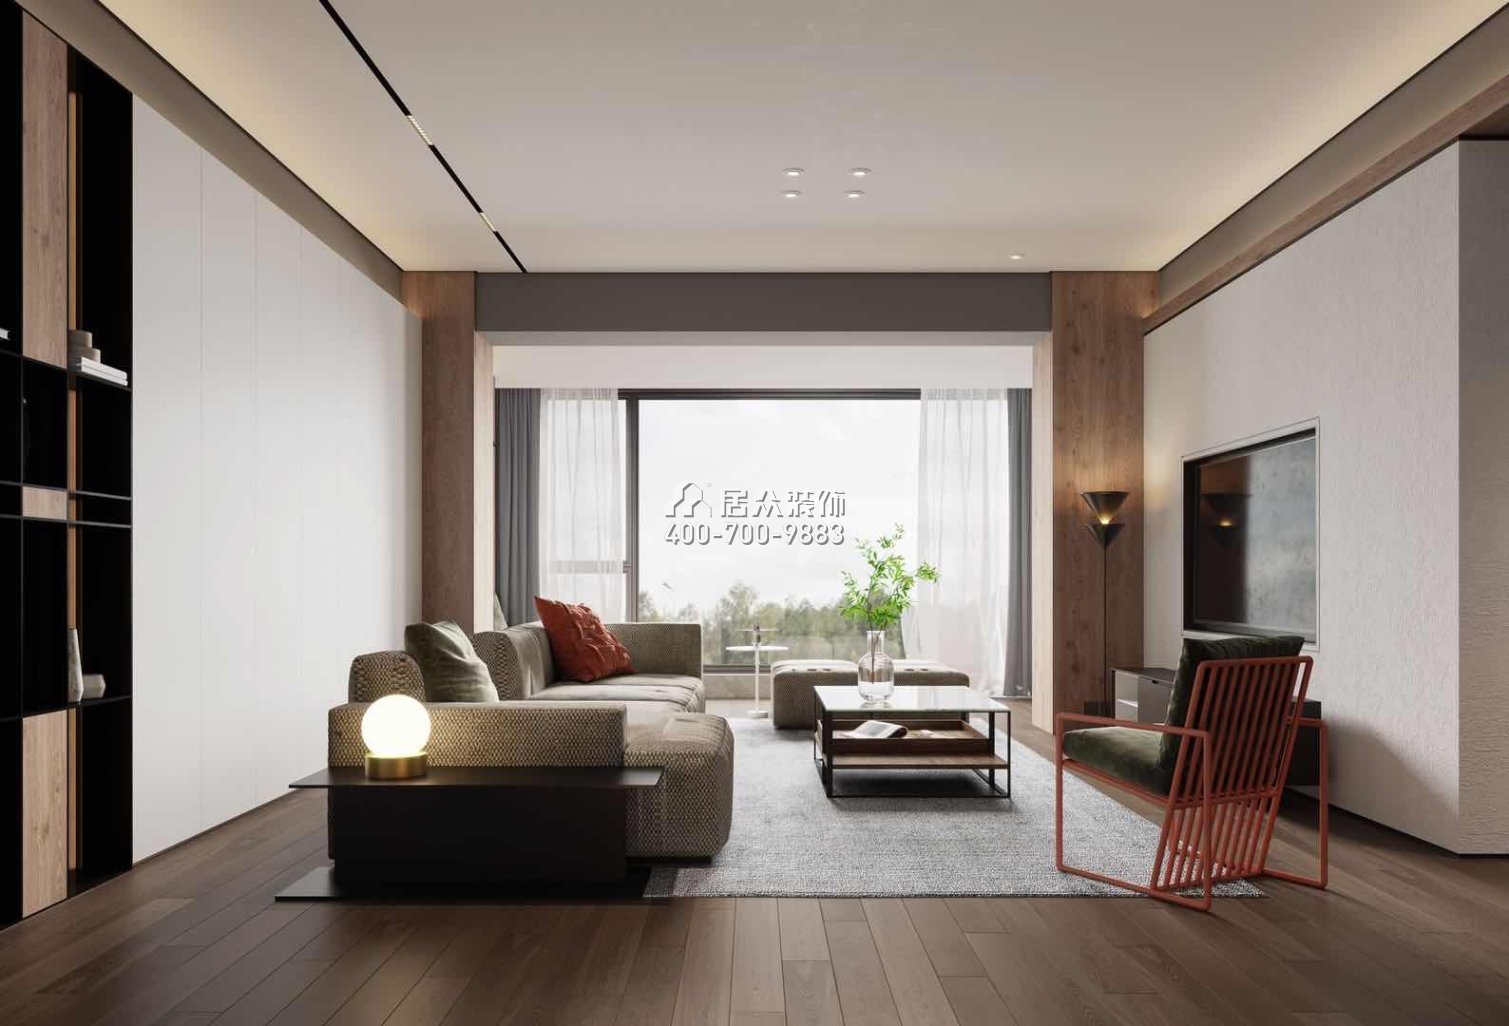 中建江山壹號197平方米現代簡約風格平層戶型客廳裝修效果圖